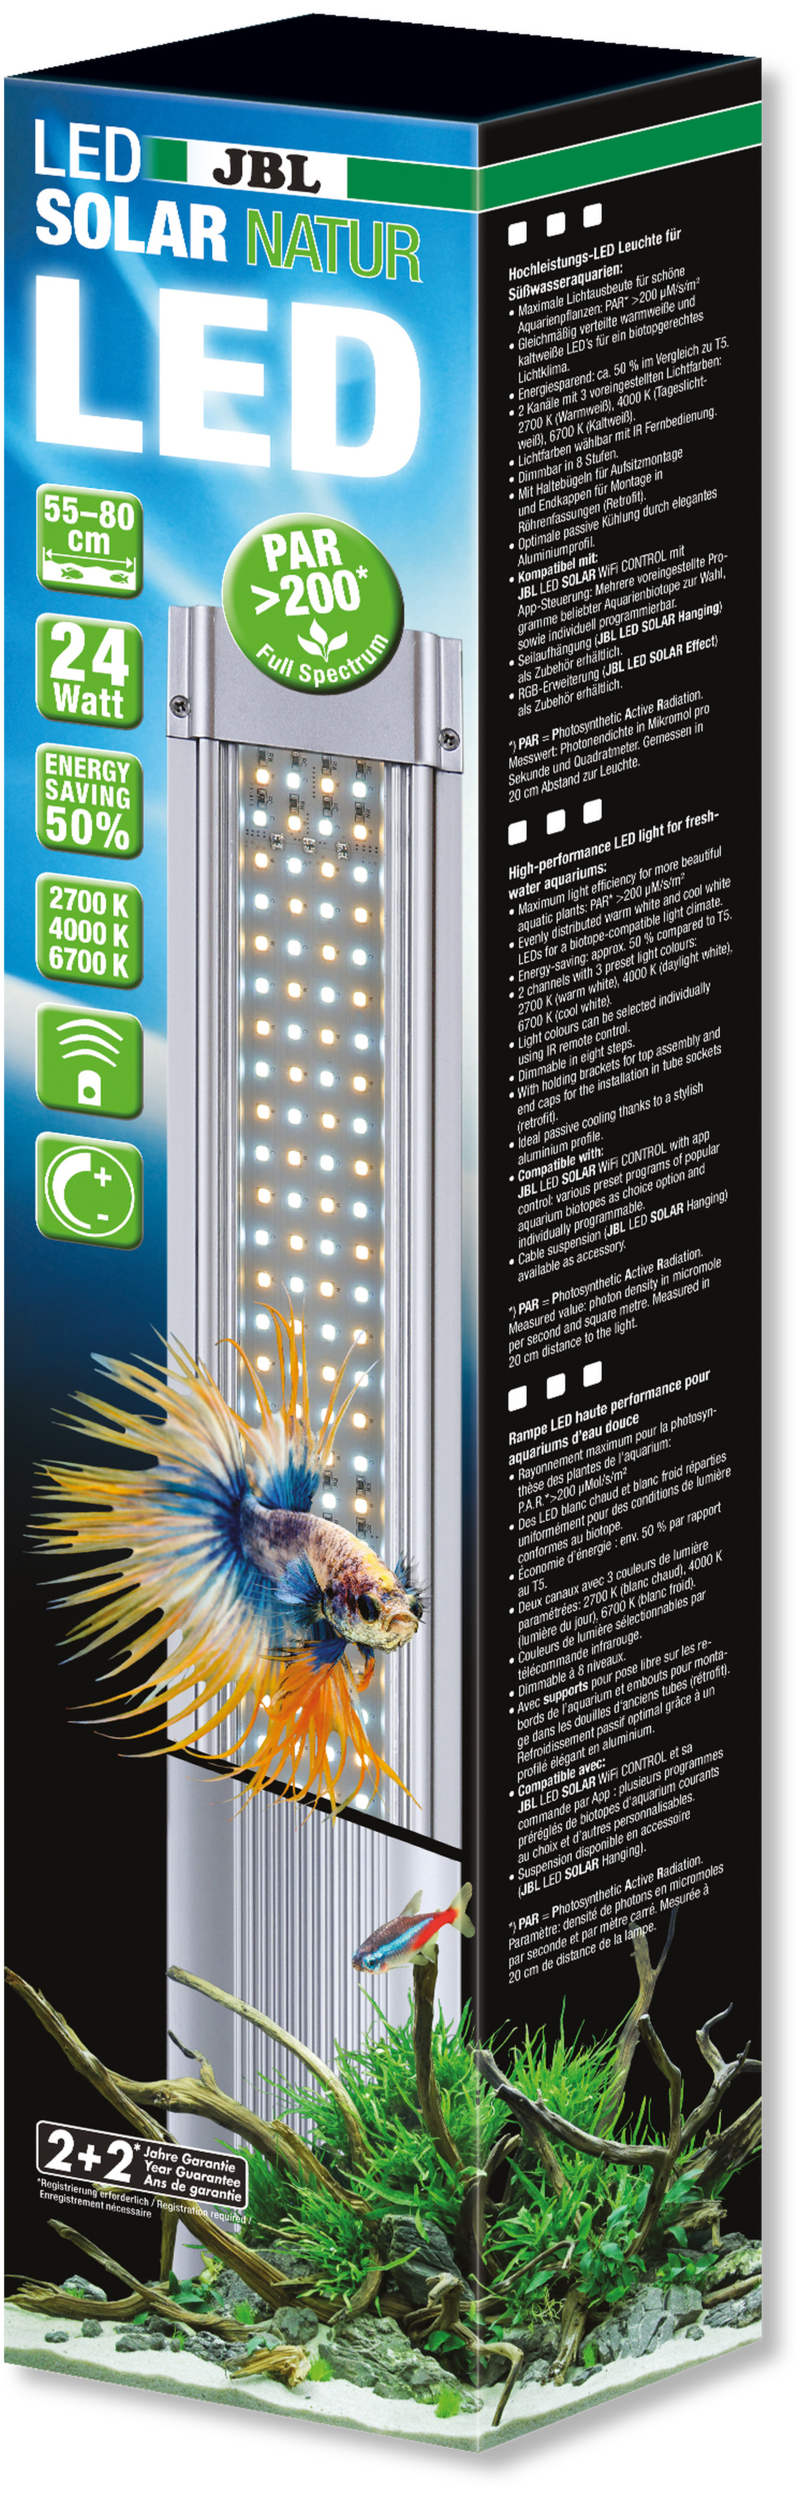 JBL LED Solar Natur 24W rampe aquarium Eau douce de 55 à 80 cm ou remplace tube T5 et T8